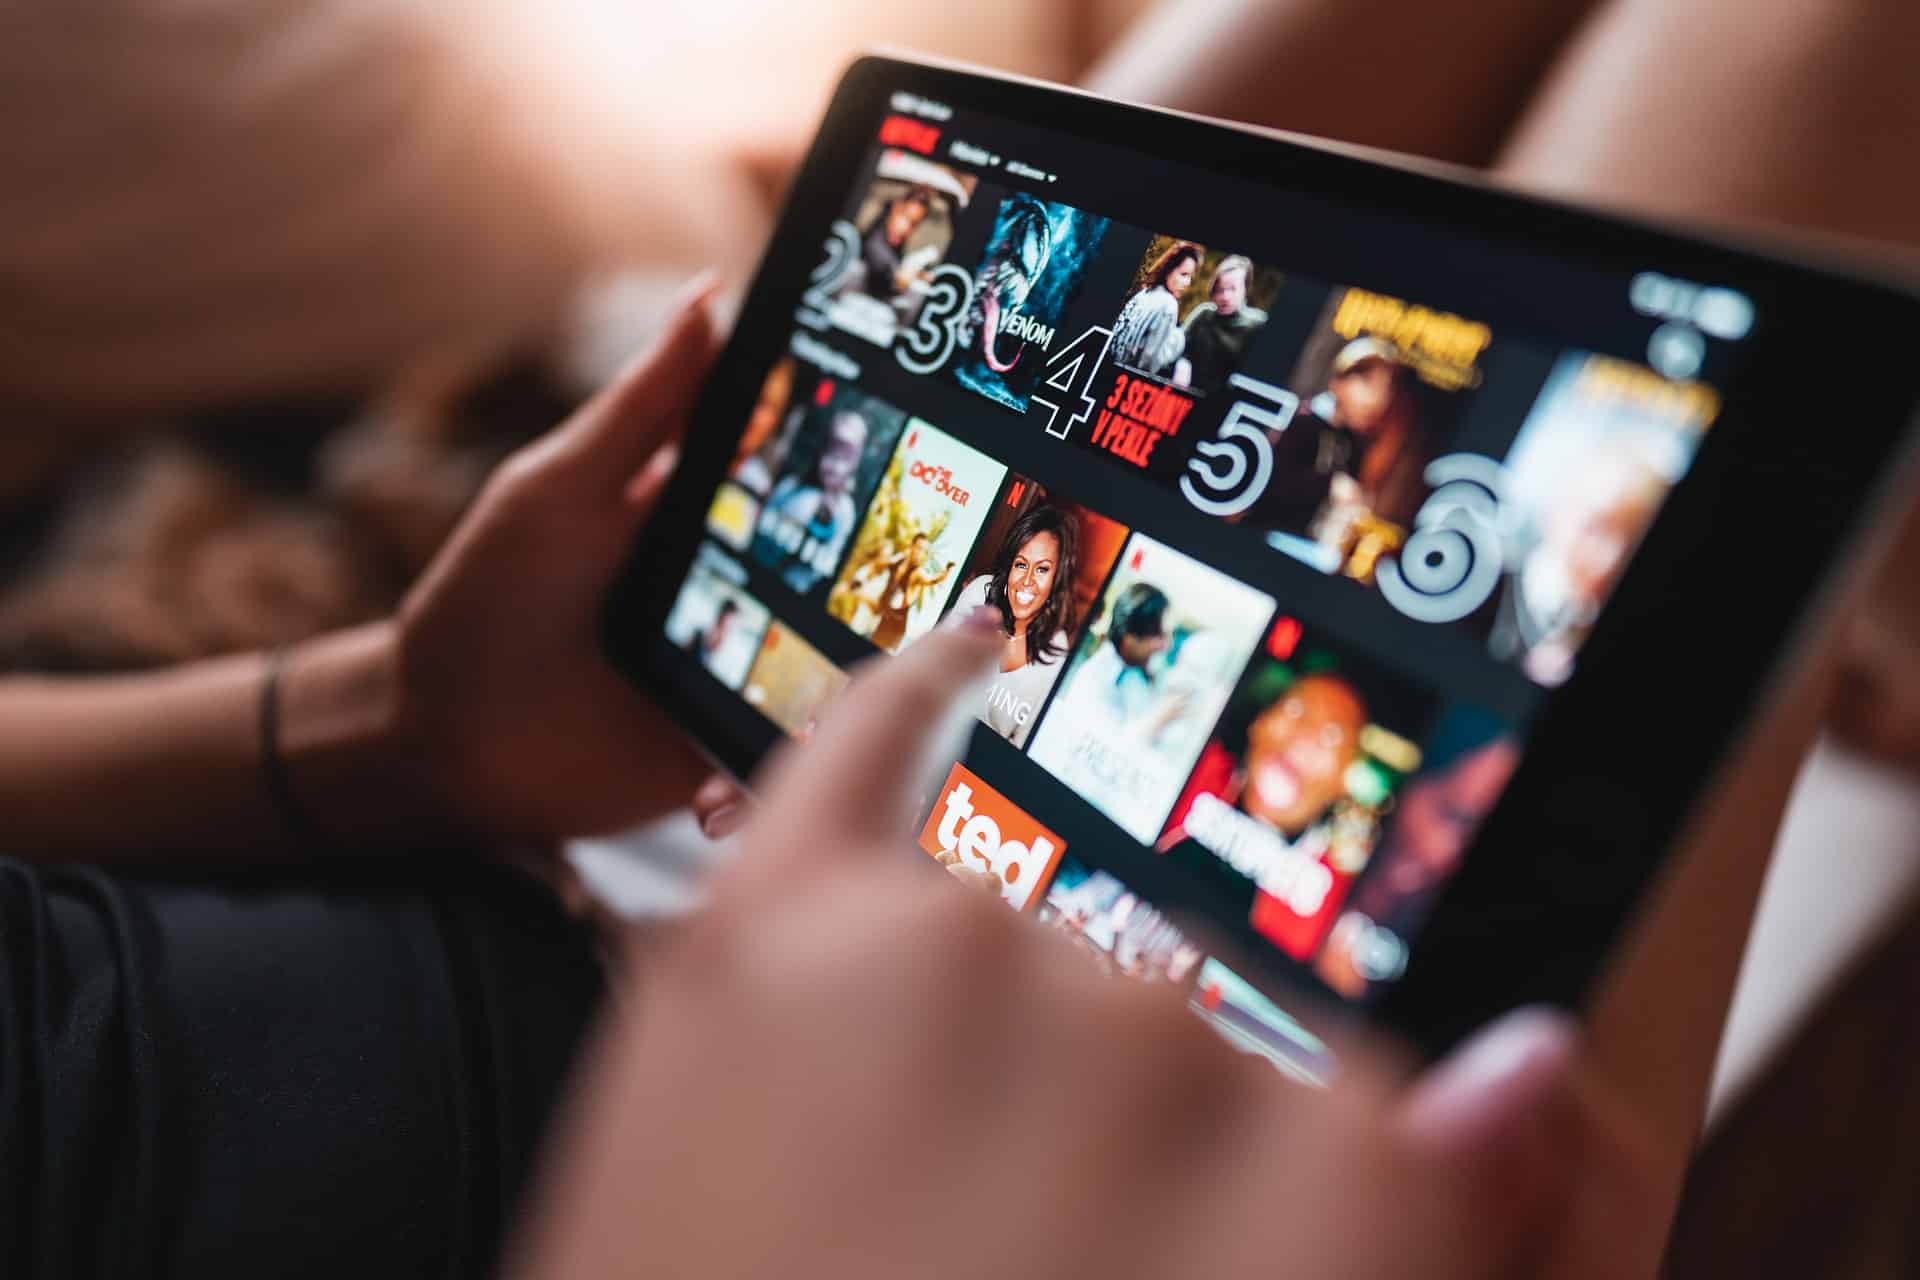 El streaming busca su salvación en la TV tradicional: pagar menos por el mismo contenido (aunque con anuncios)